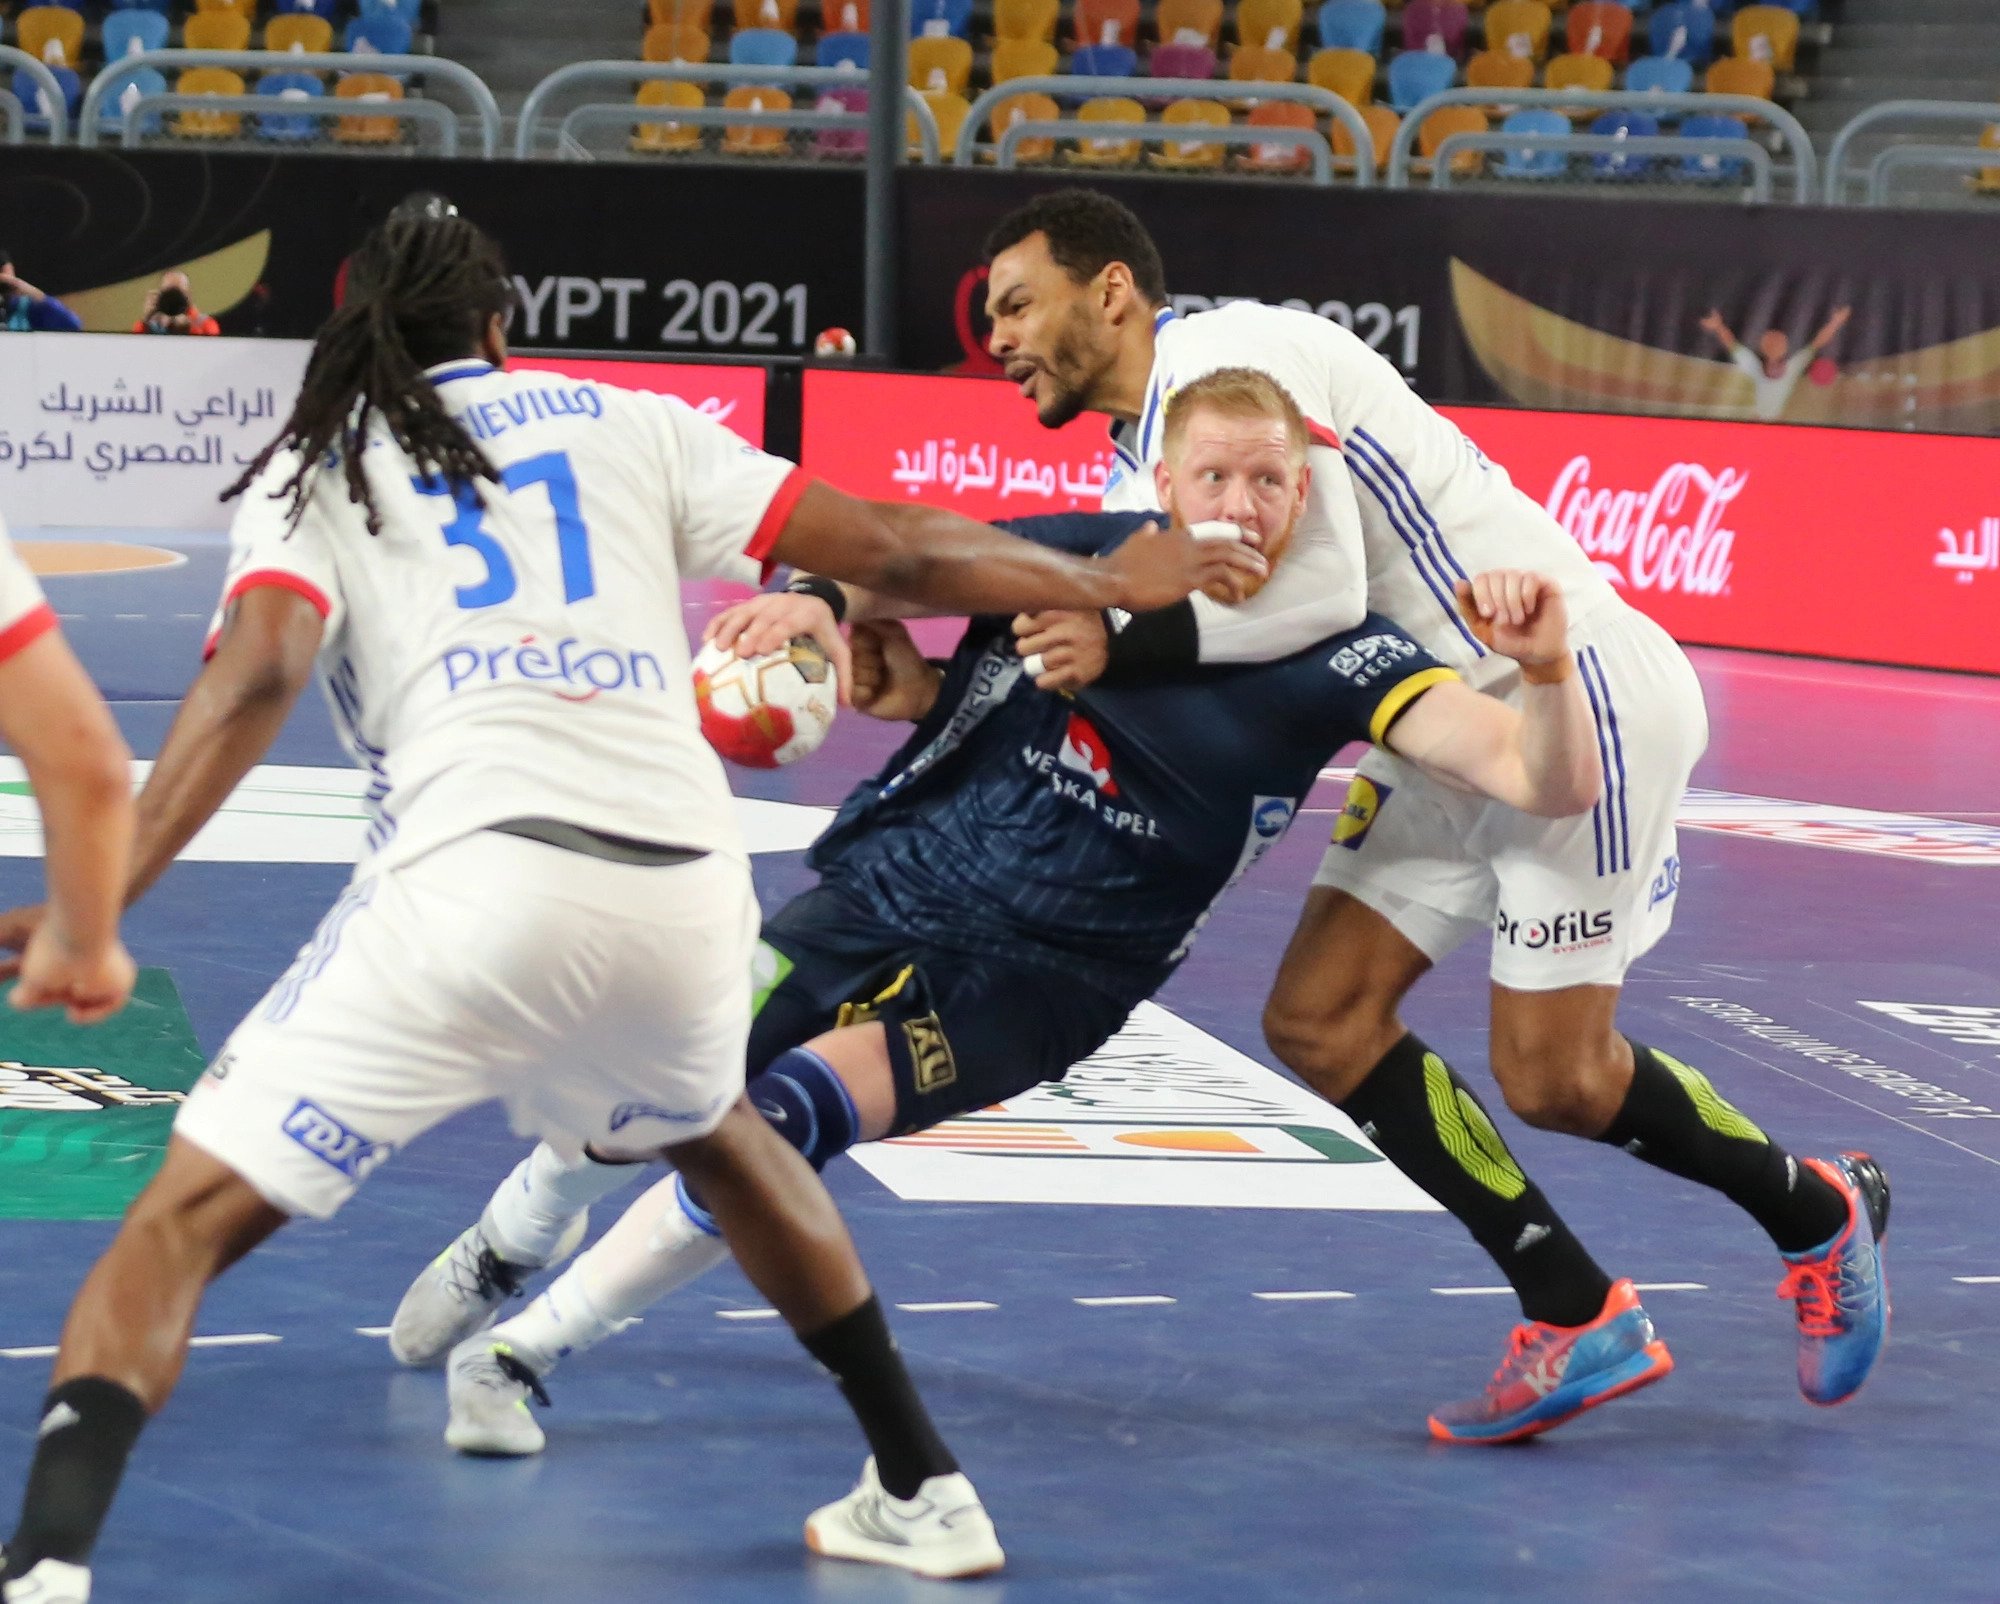 Sensational win for Sweden against France - handball-base.com